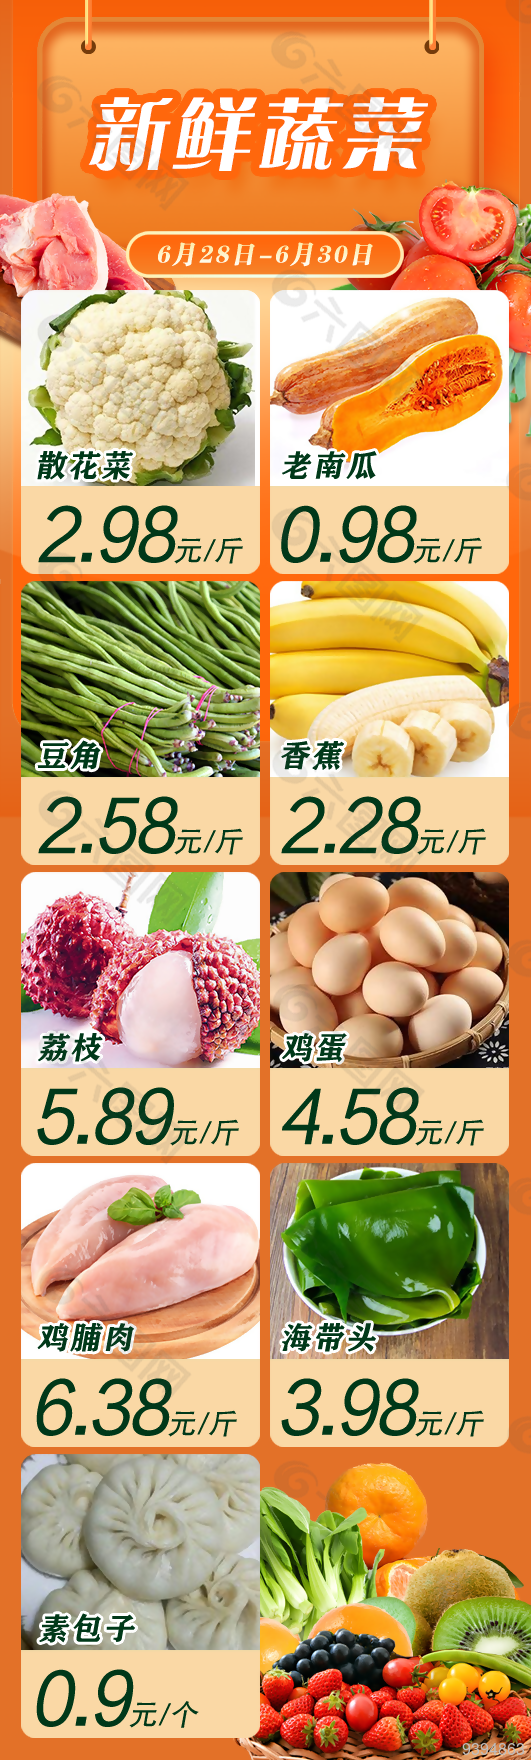 新鲜蔬菜超市促销微信宣传长图下载